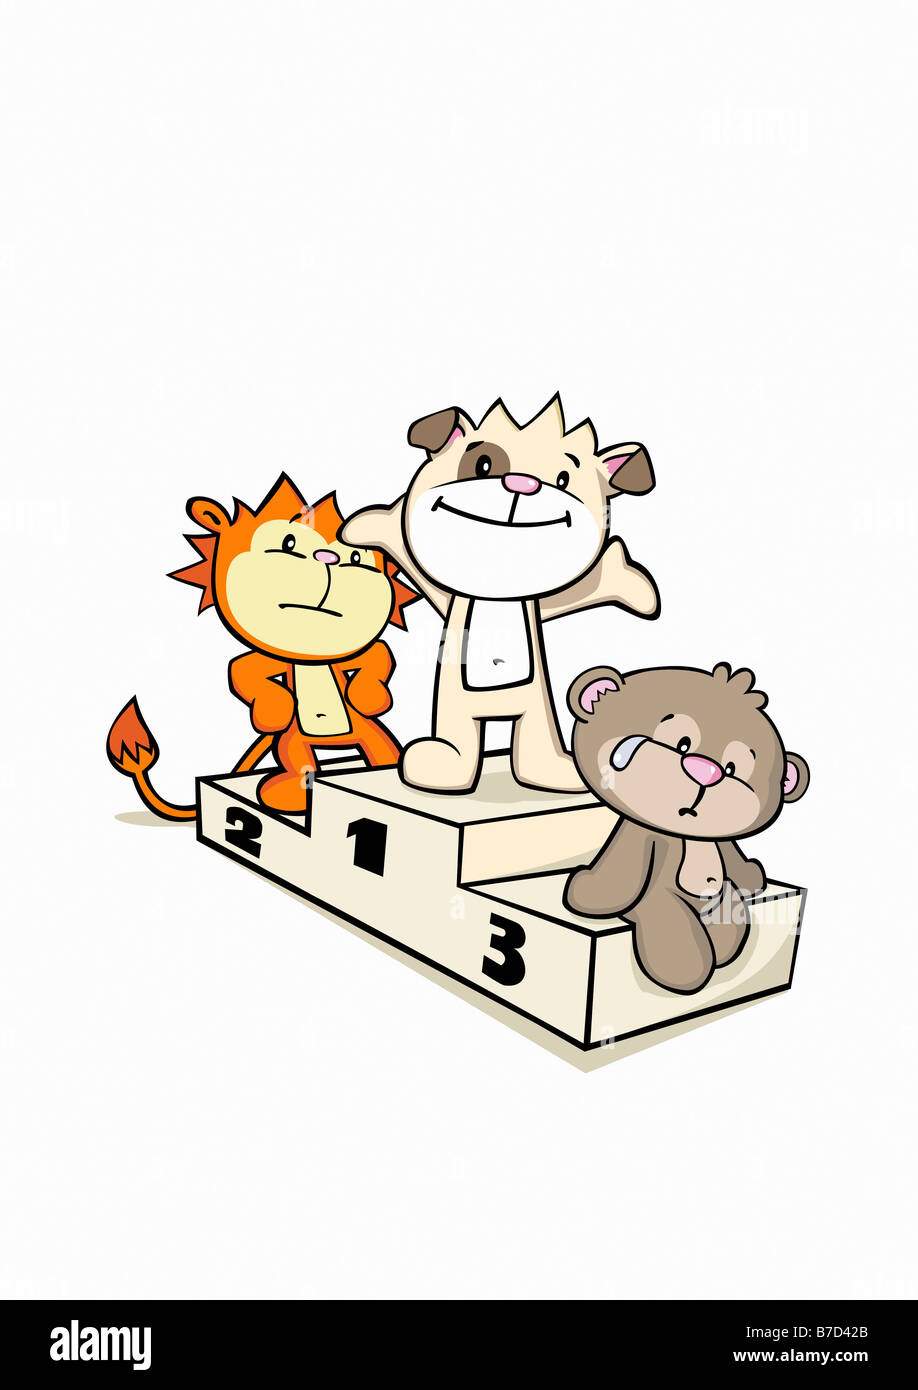 Trois animaux cartoon debout sur un podium gagnants Banque D'Images